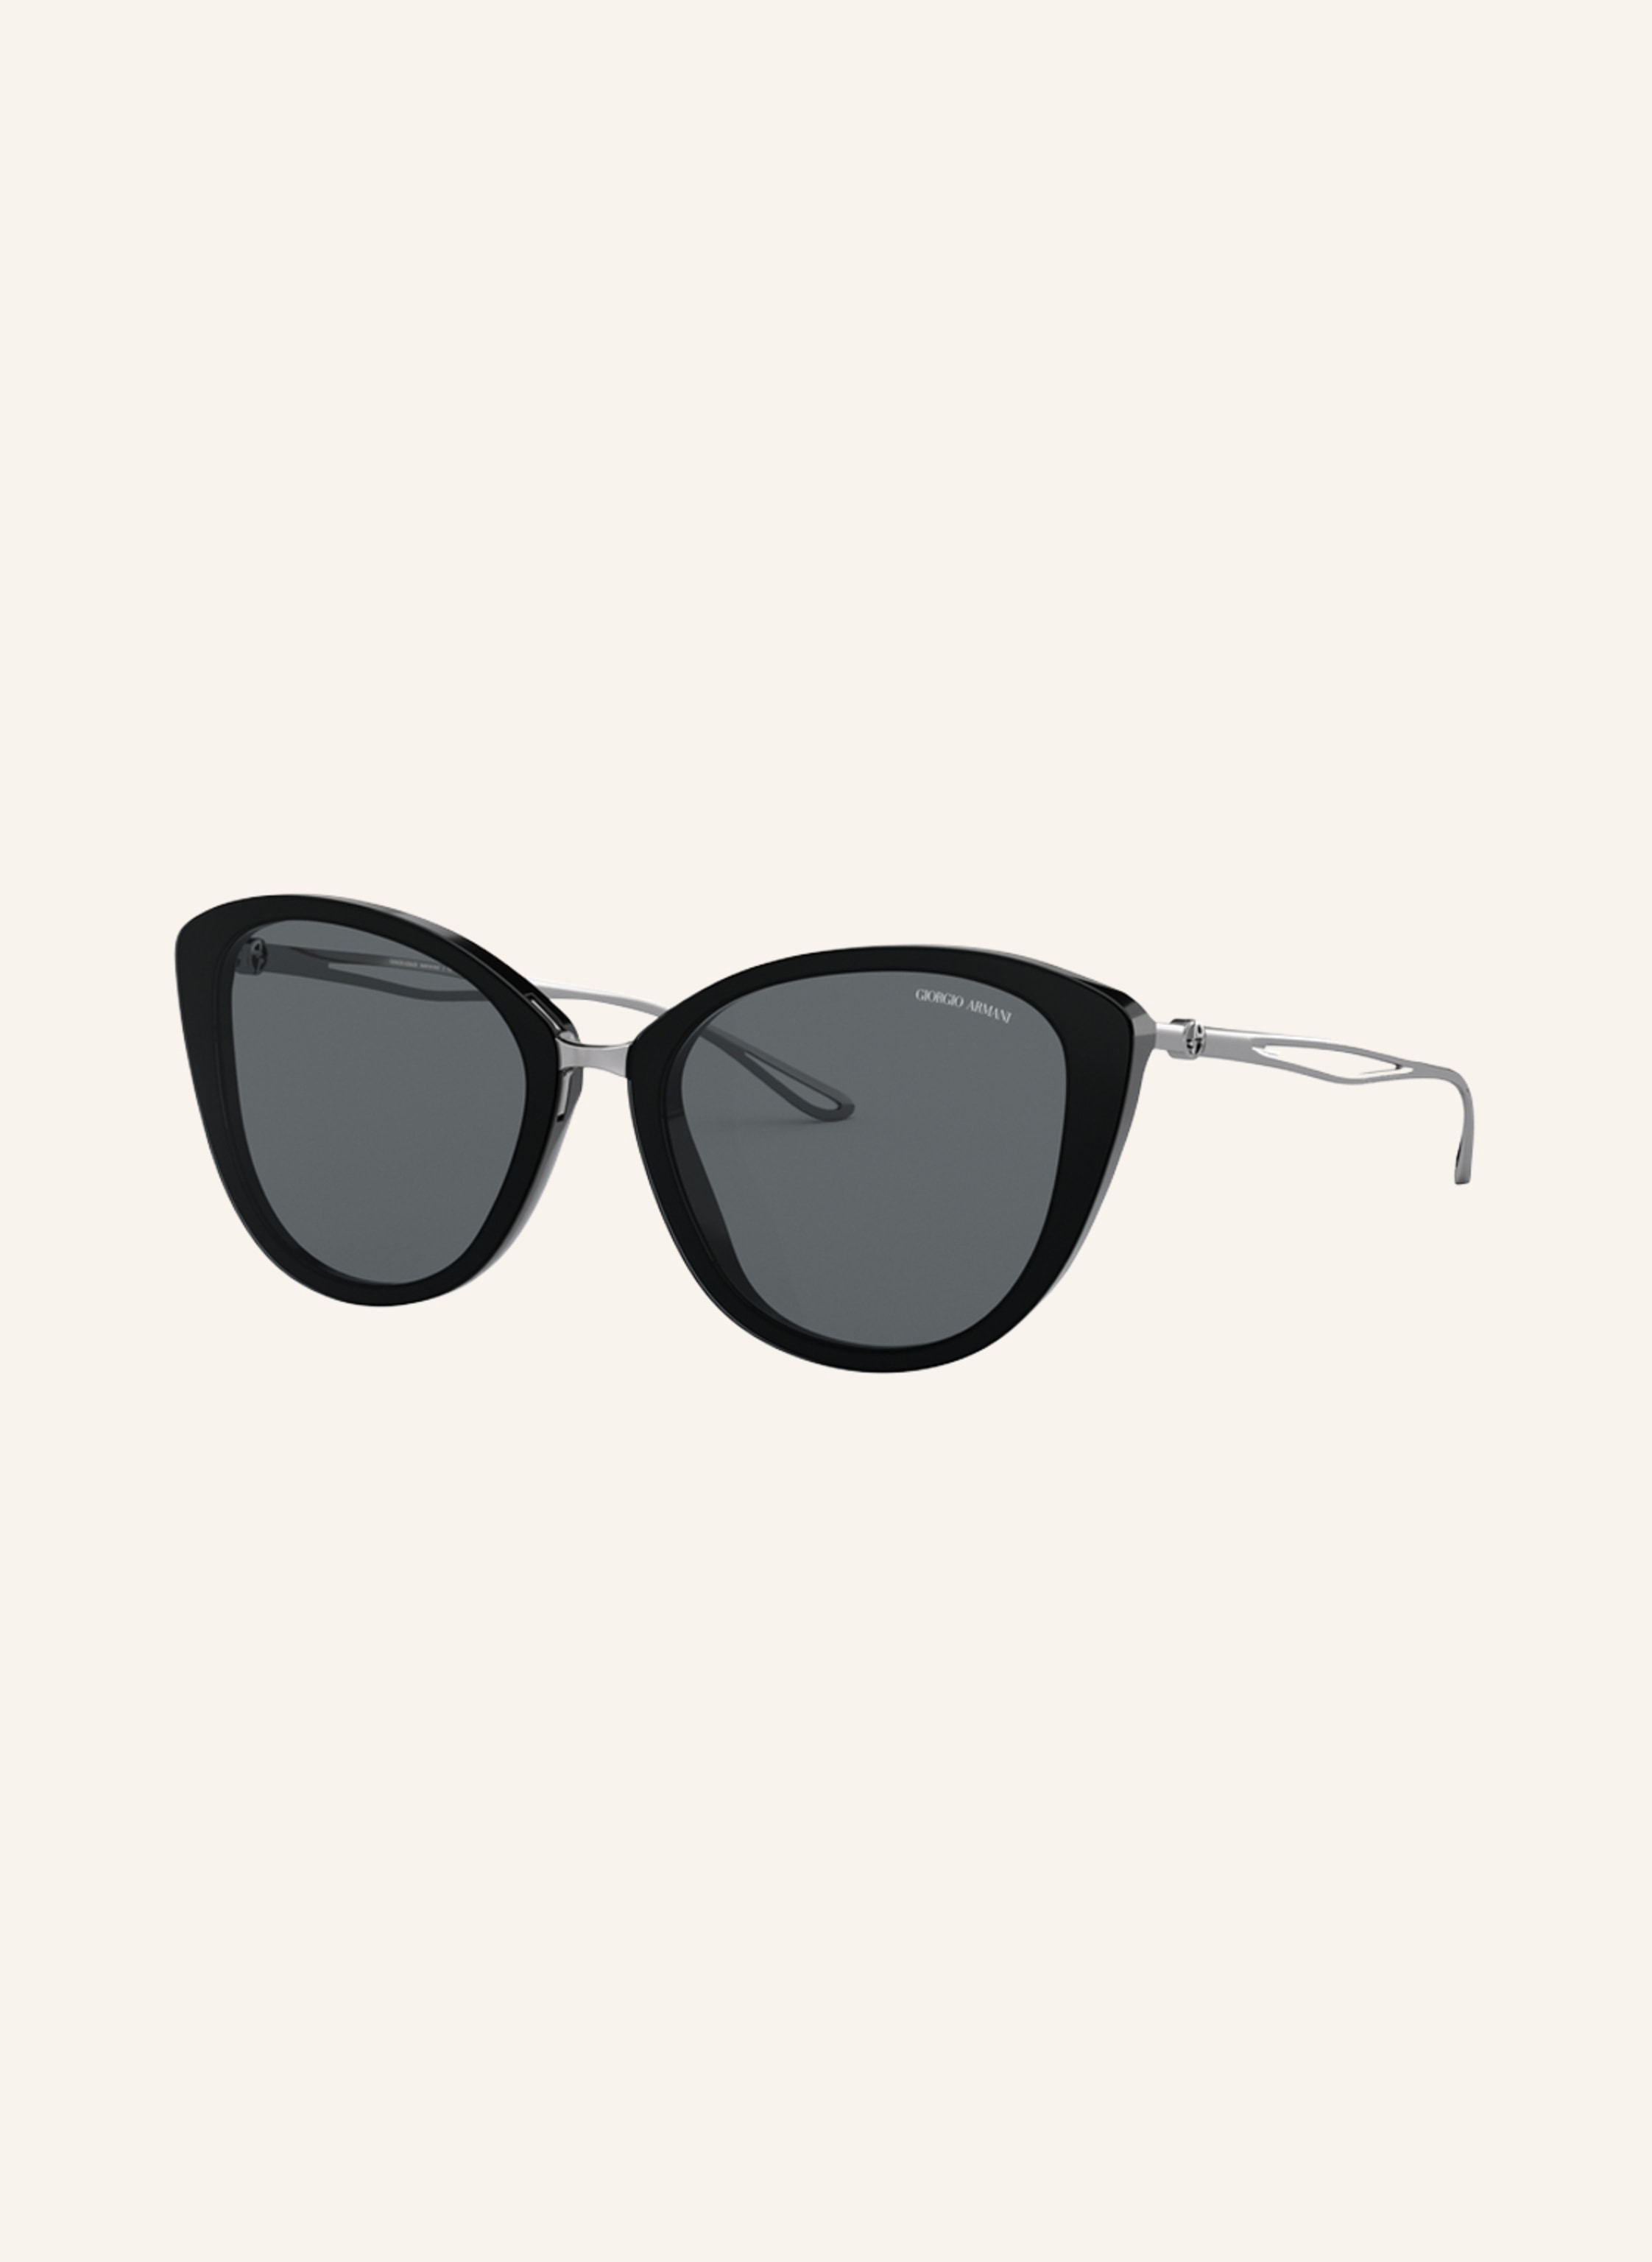 EMPORIO ARMANI Sunglasses AR 8123 in 500187 - black/ silver mirrored |  Breuninger